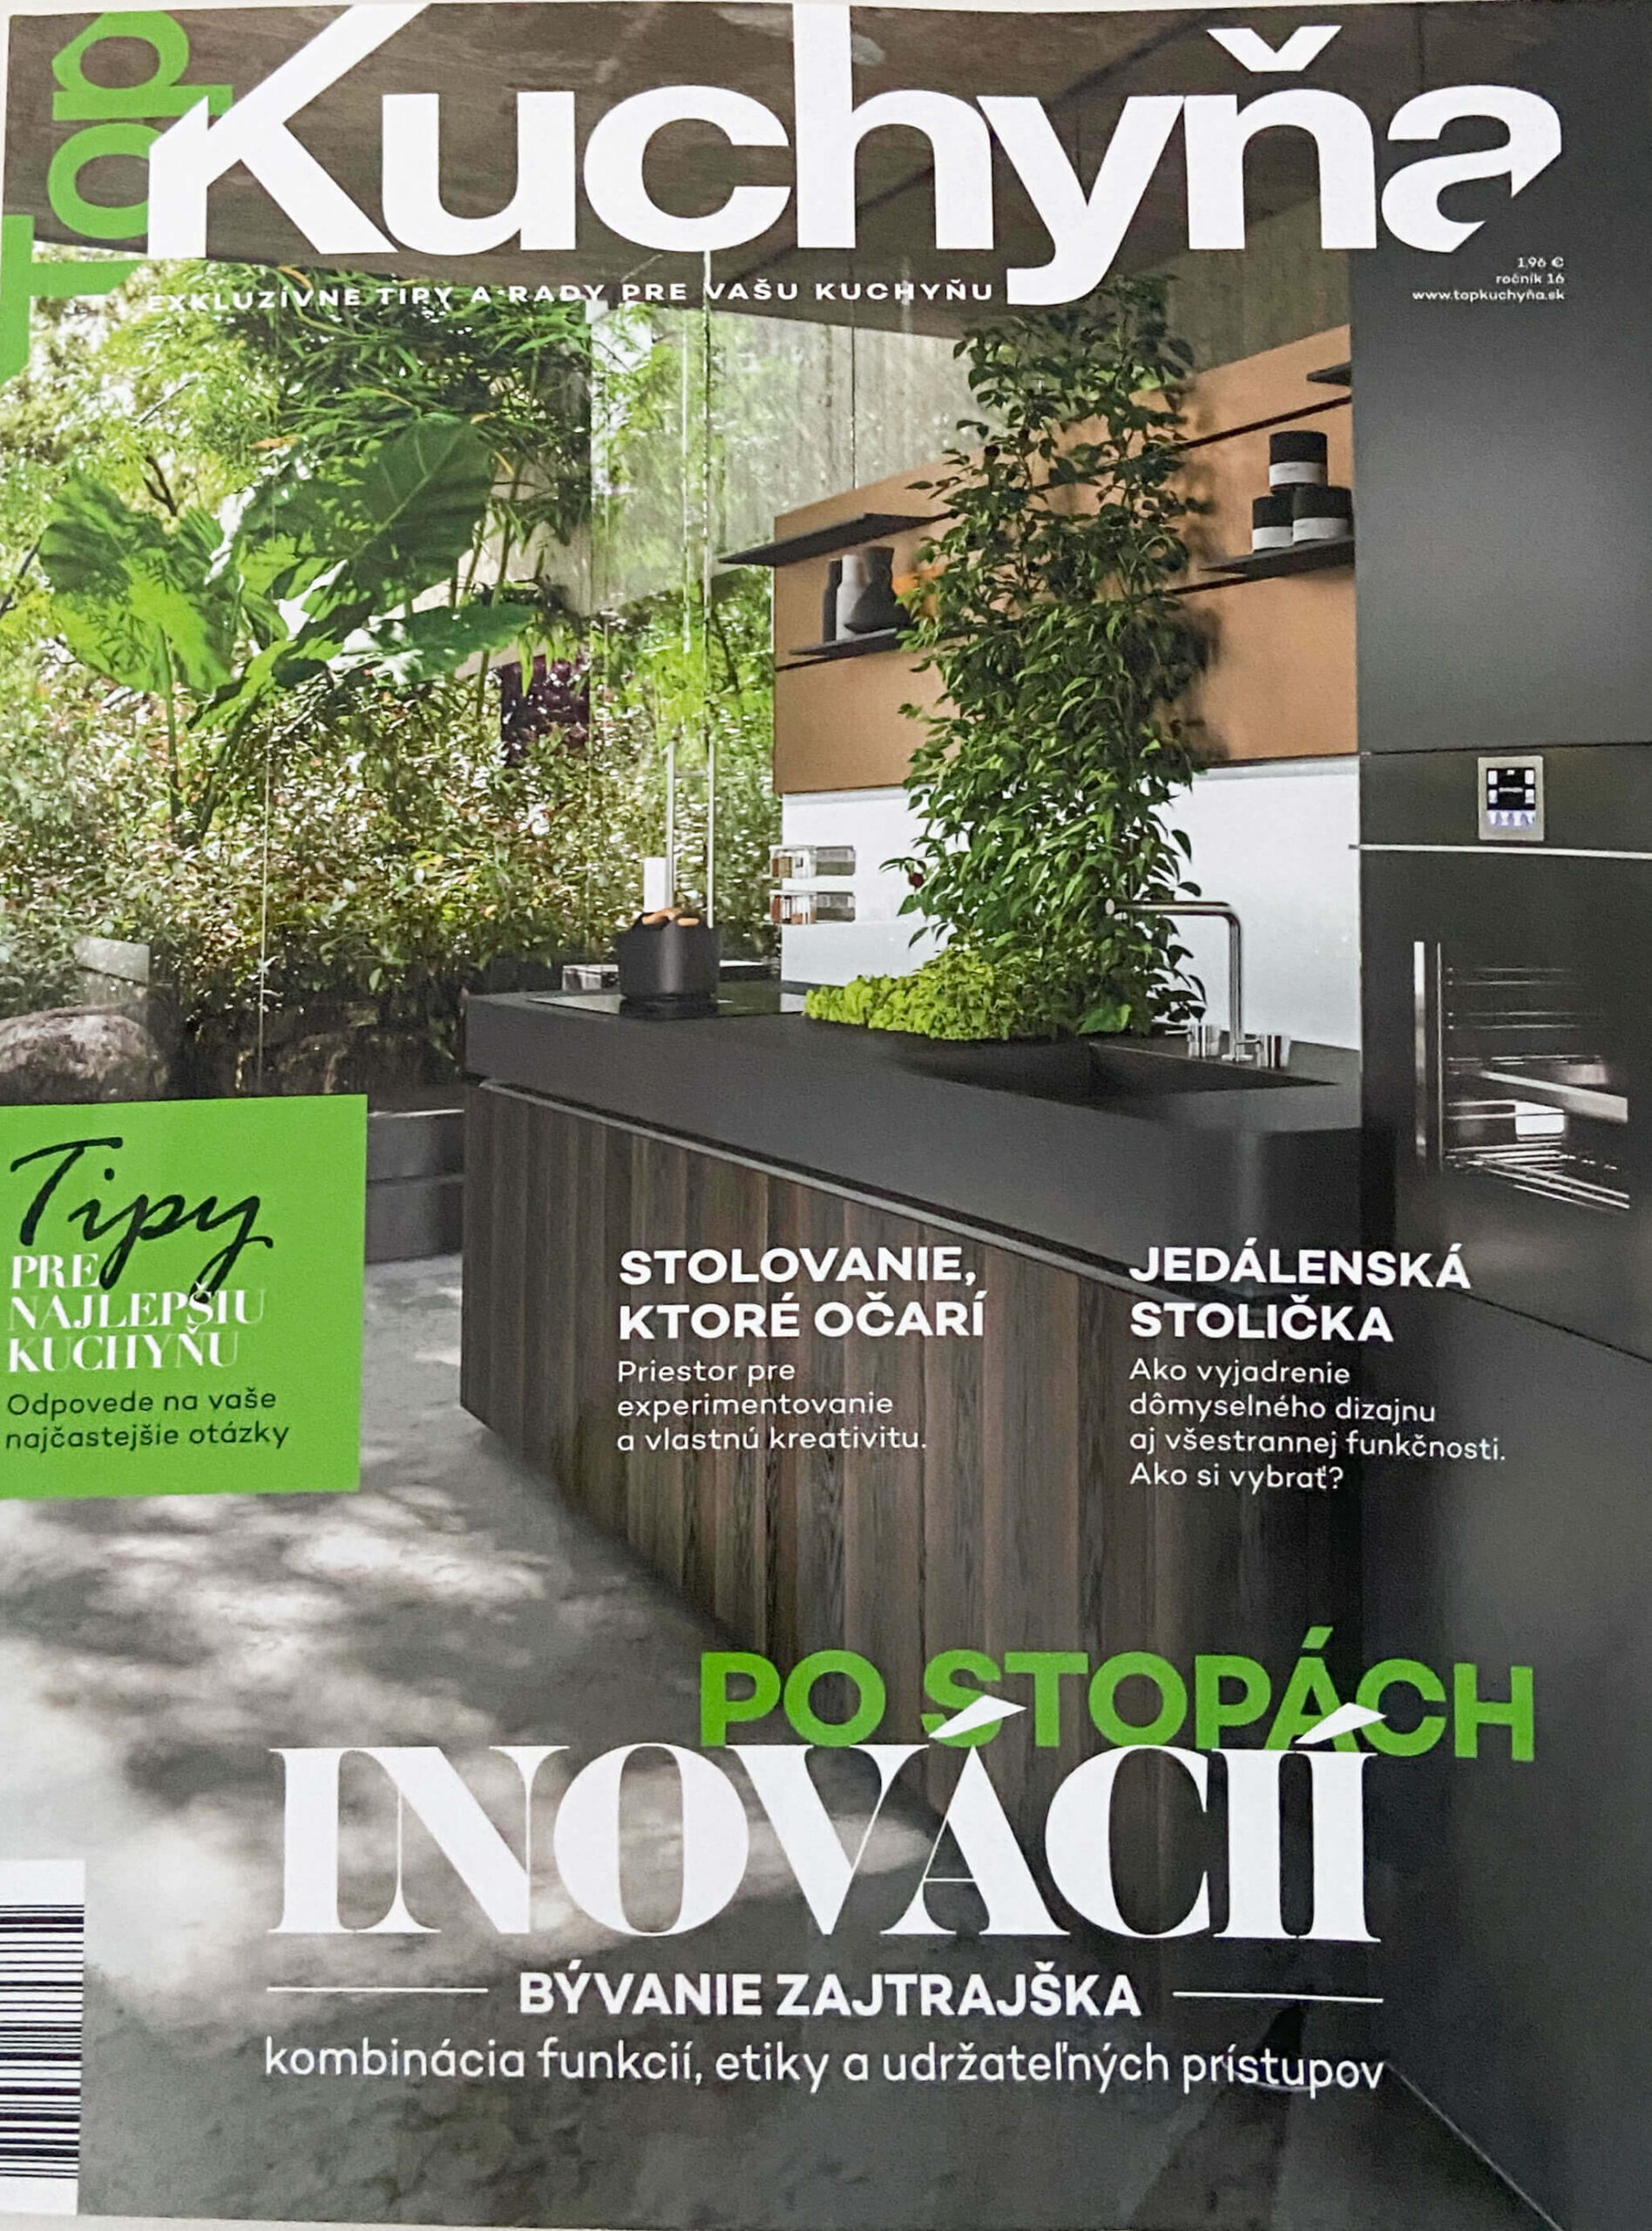 TOP Kuchyňa cover časopisu zobrazujúci vonkajšiu kuchyňu